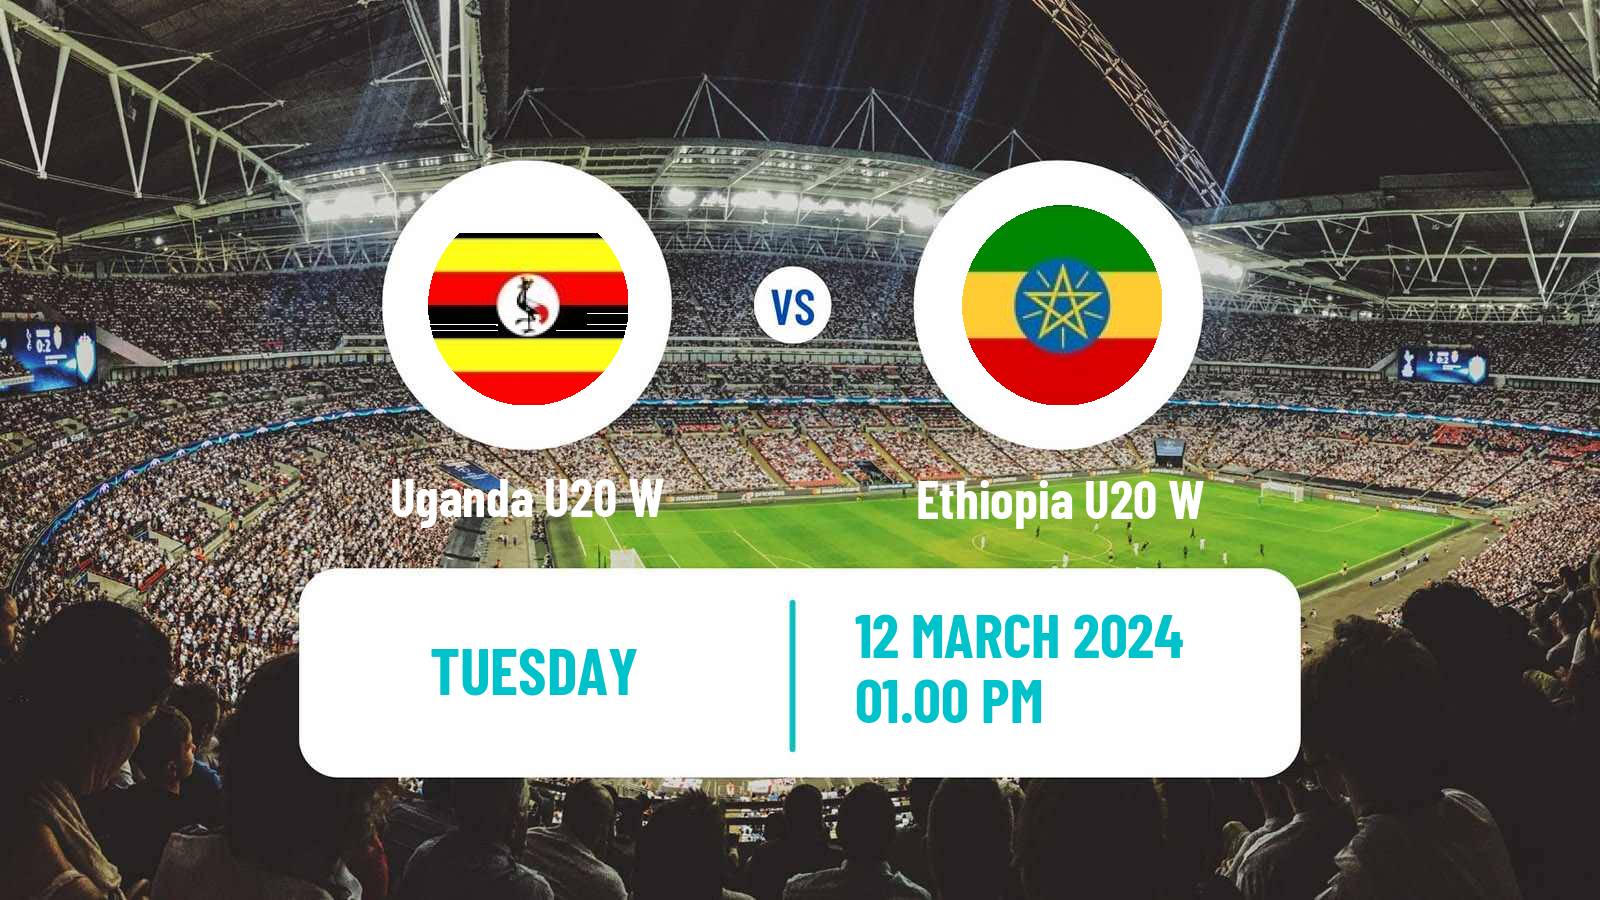 Soccer African Games Football Women Uganda U20 W - Ethiopia U20 W